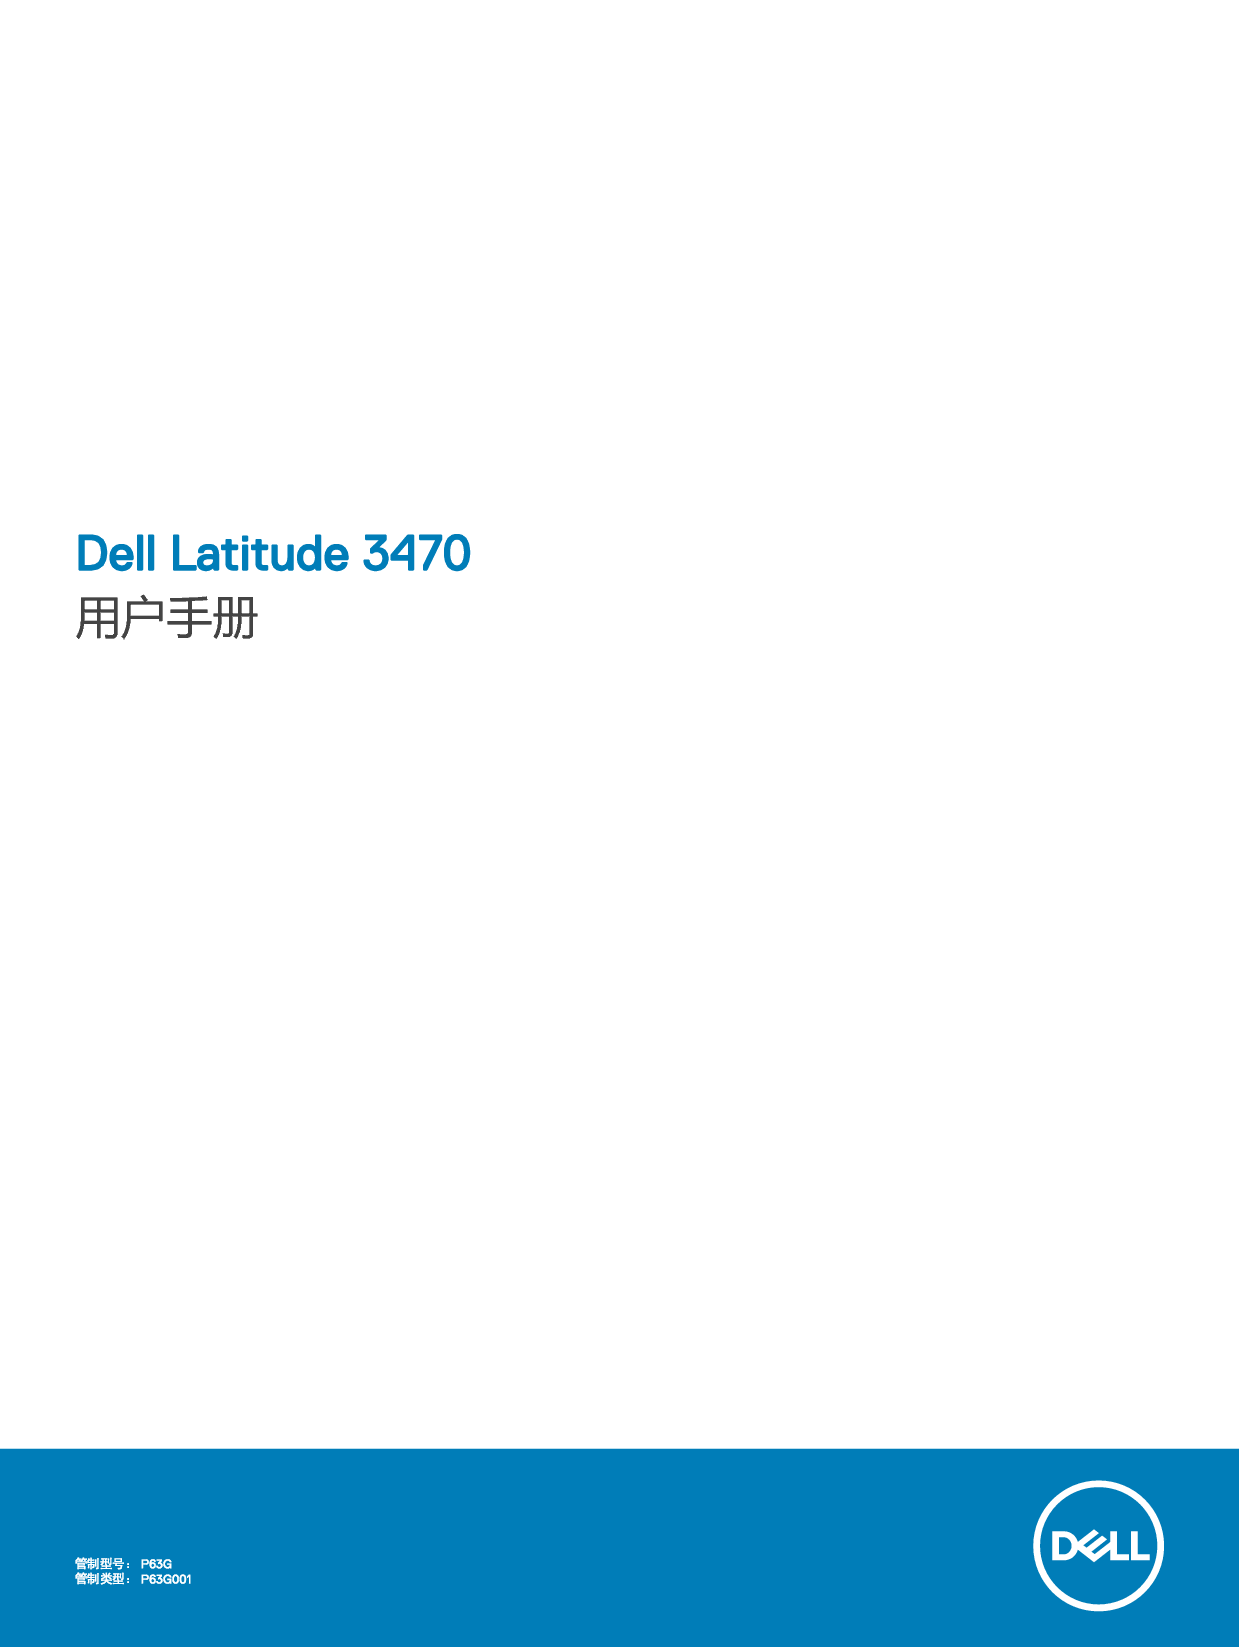 戴尔 Dell Latitude 3470 用户手册 封面